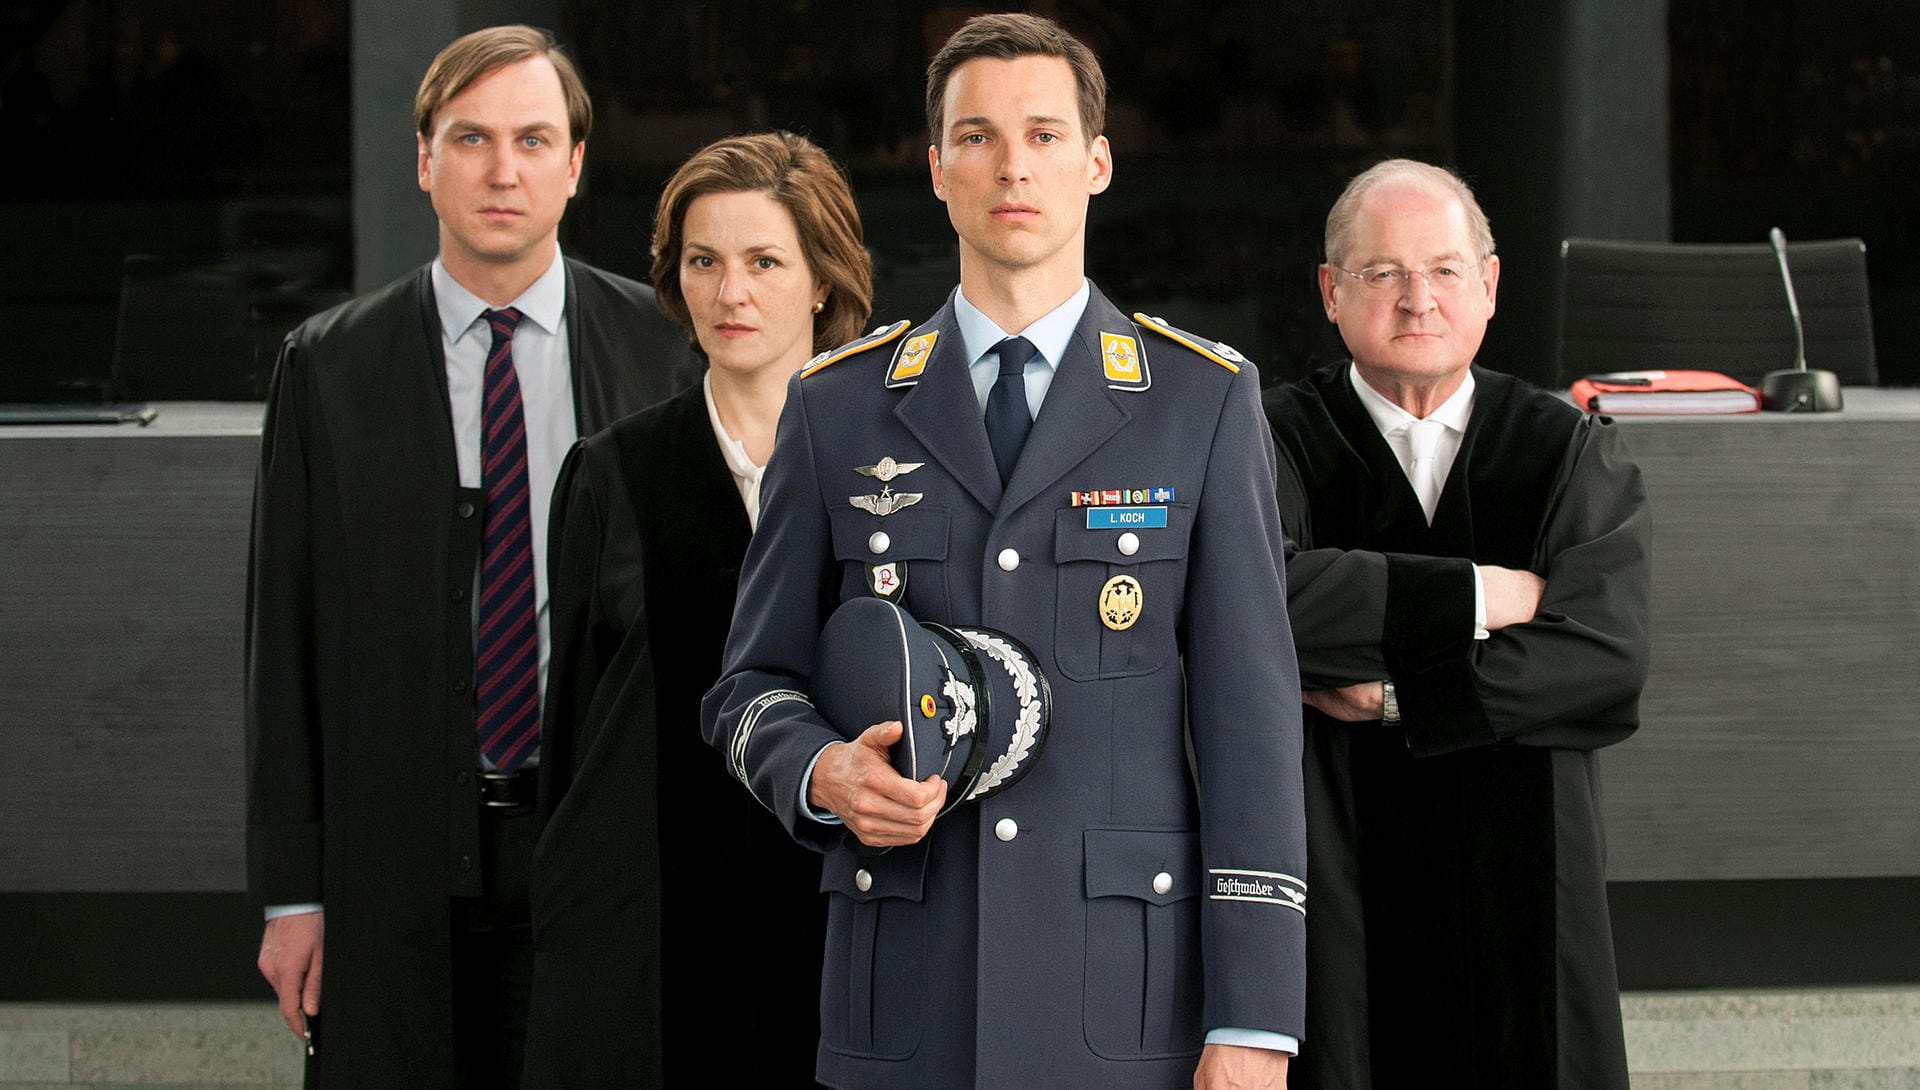 Das TV-Experiment der ARD bringt einige deutsche TV-Stars gemeinsam vor die Kamera. Florian David Fitz (vorne) als Eurofighter-Pilot Lars Koch, Lars Eidinger (links) als sein Verteidiger, Martina Gedeck) als Staatsanwältin und Burghart Klaußner (rechts) als Richter.